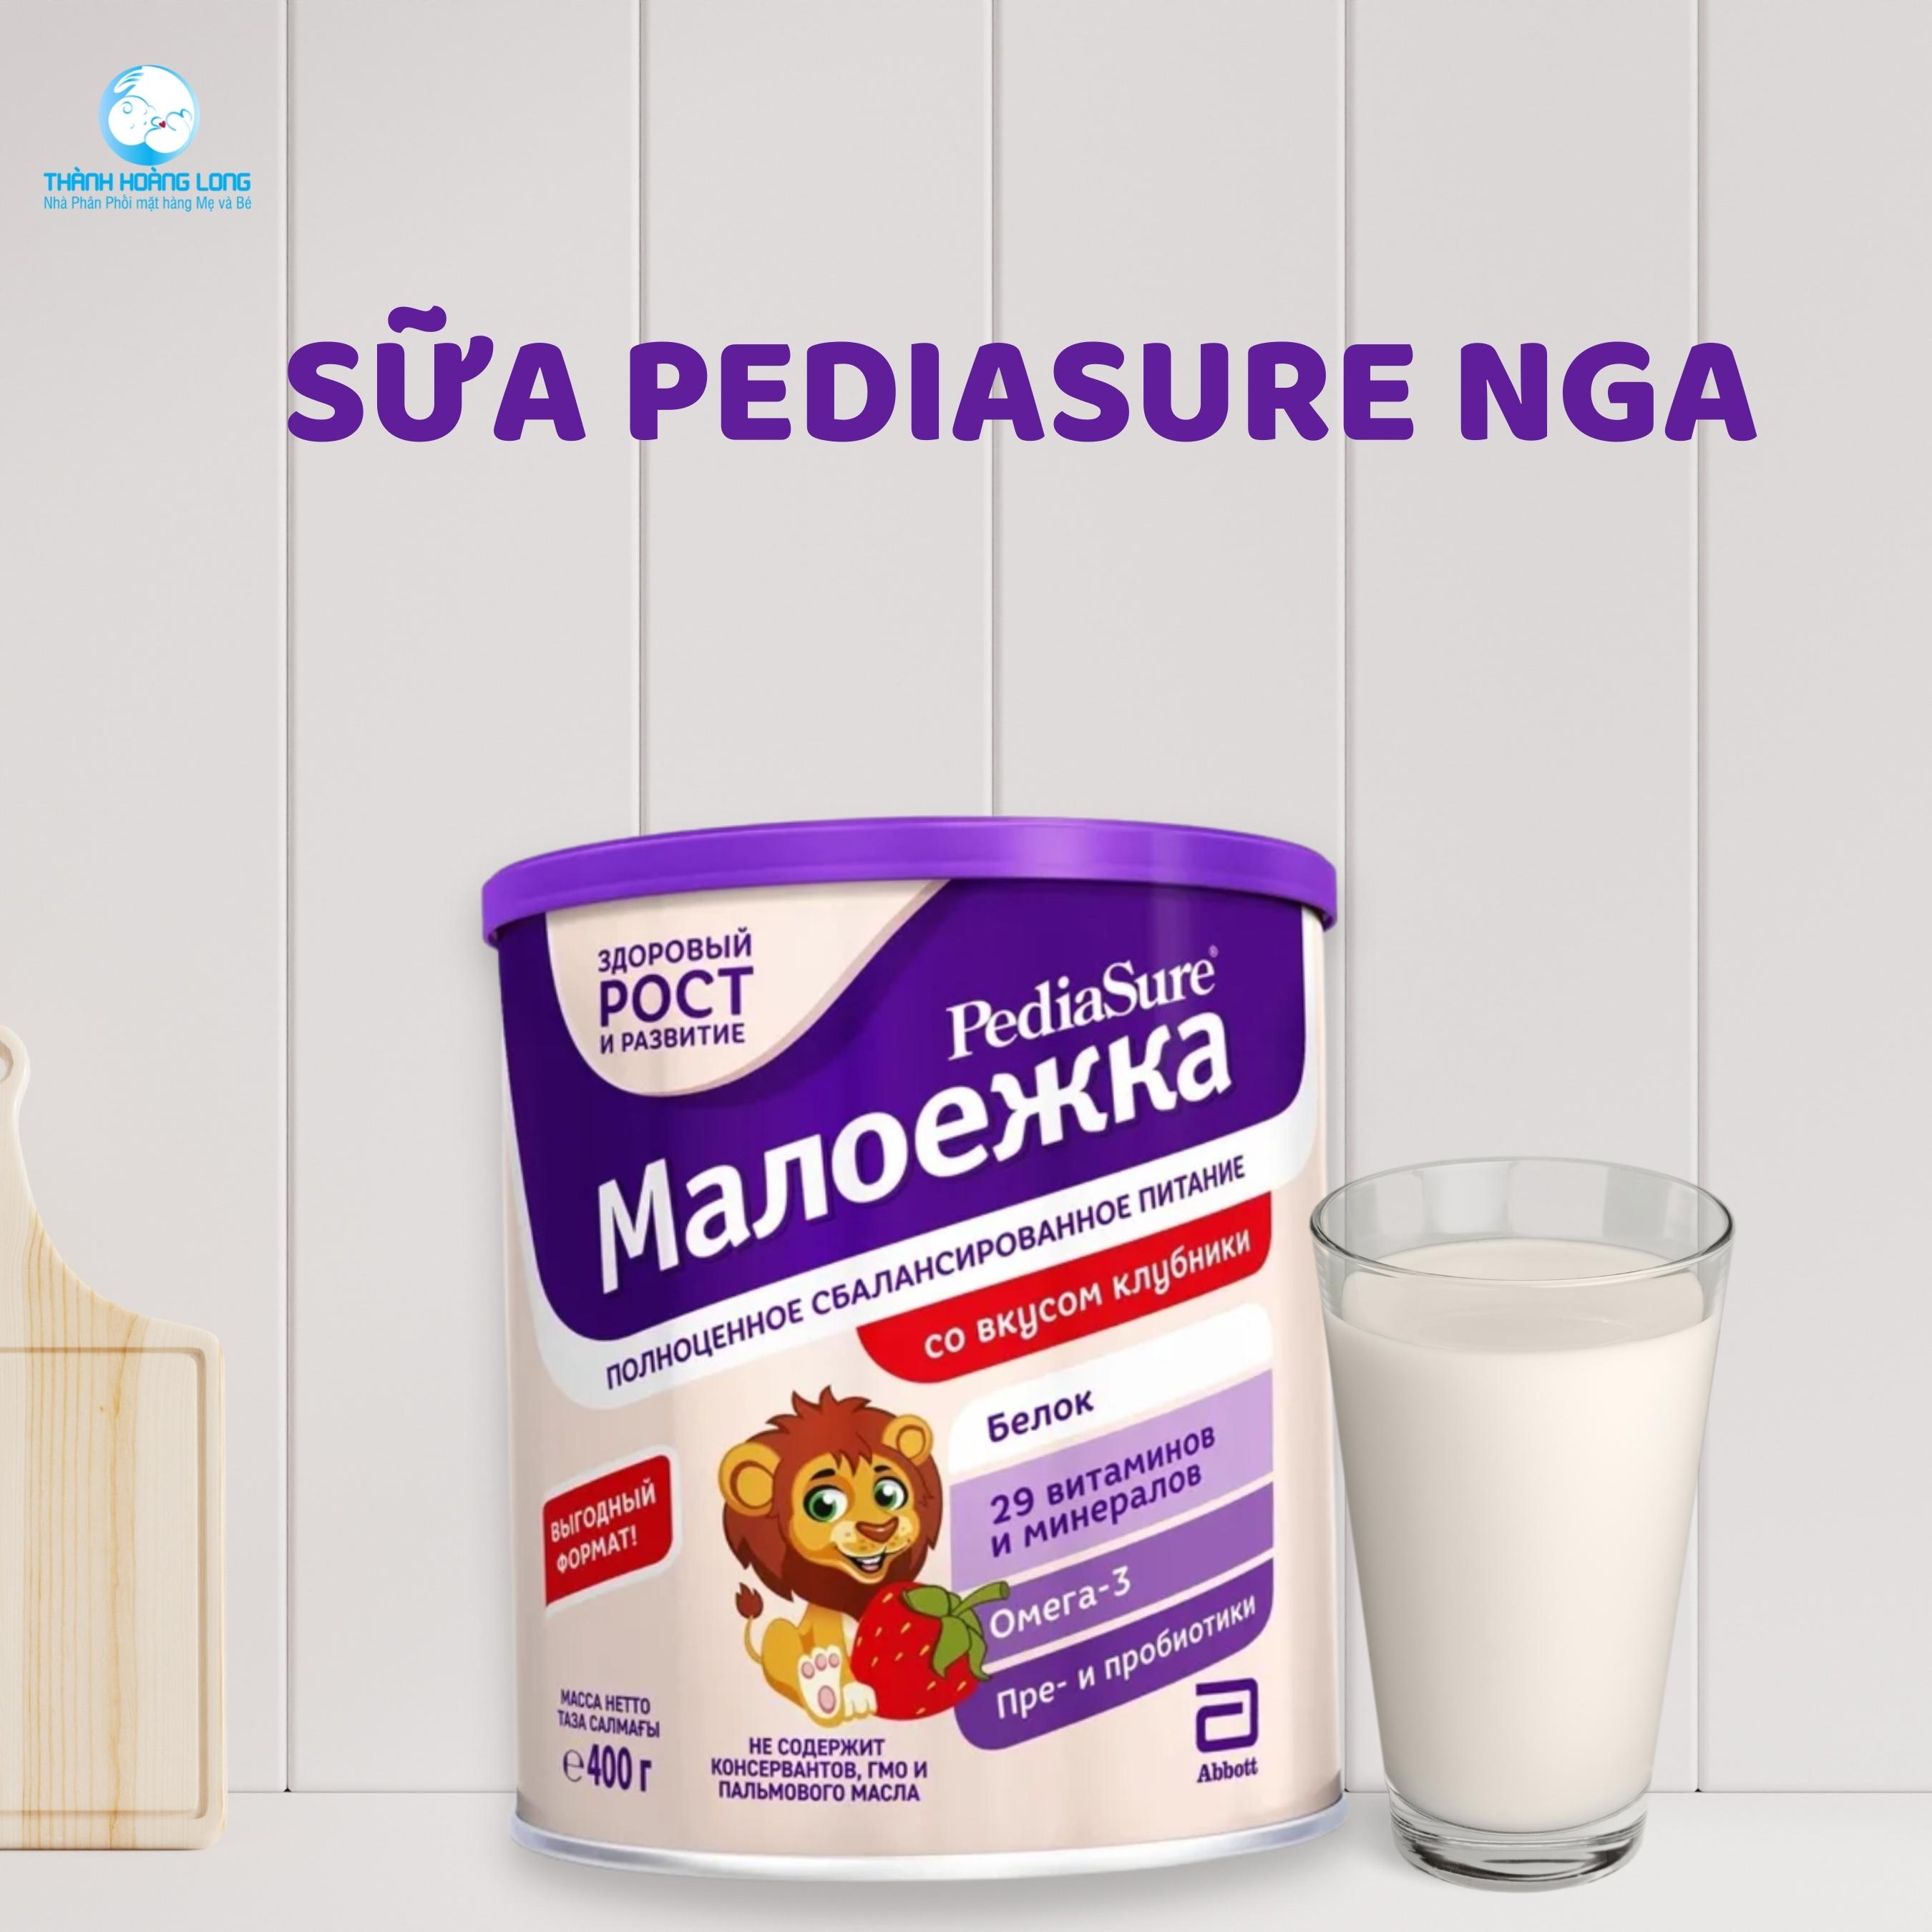 Hiểu đúng về sữa Pediasure Nga thành phần công dụng nguồn gốc